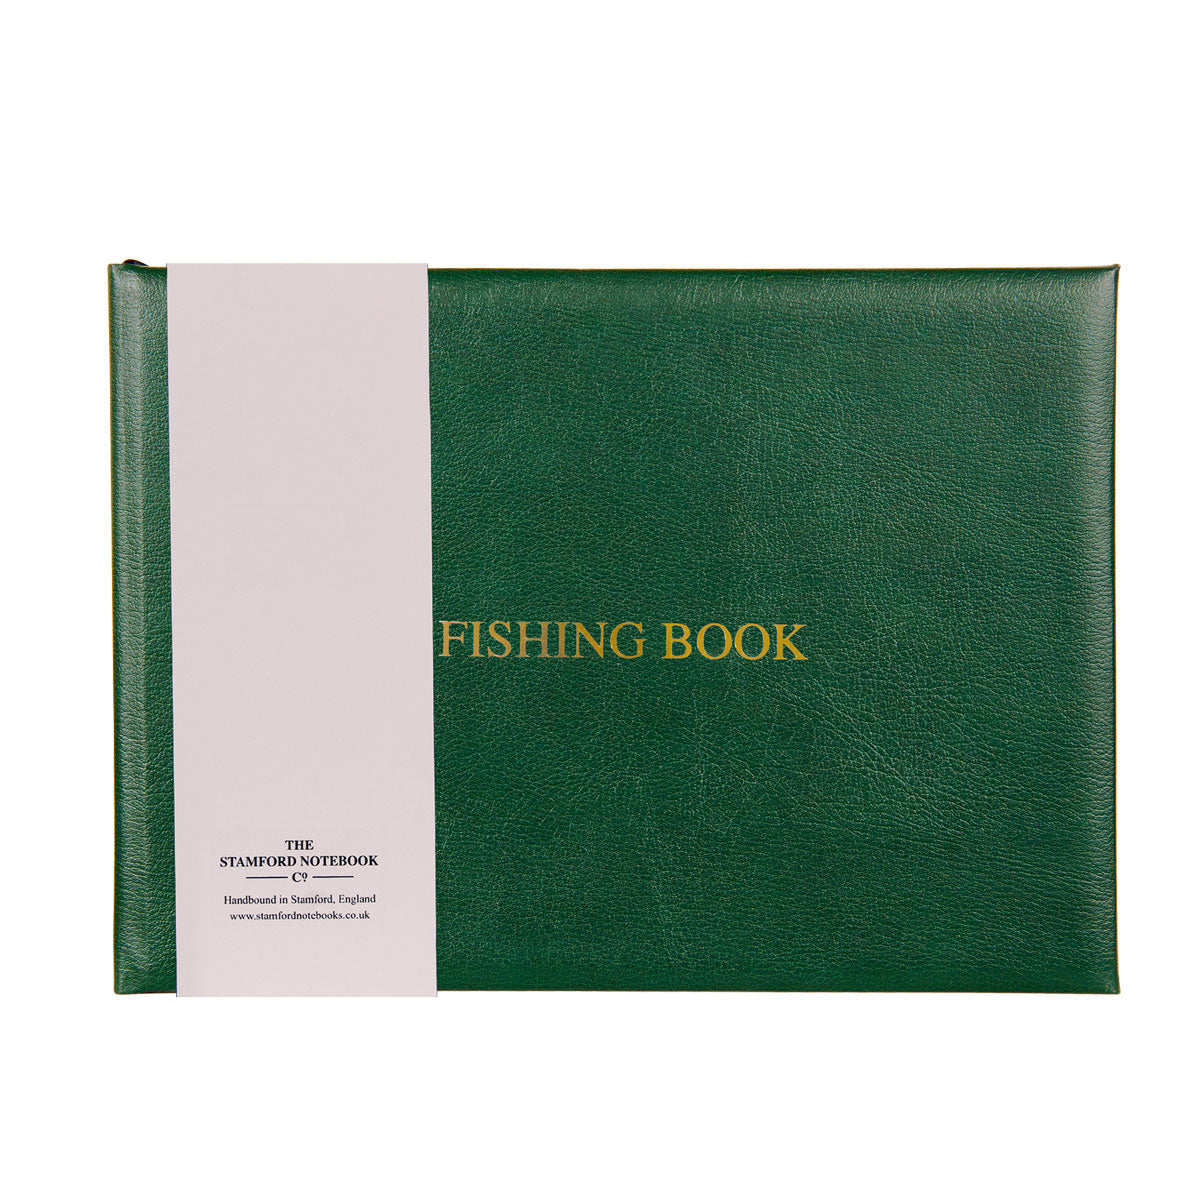 https://stamfordnotebooks.co.uk/cdn/shop/files/Fishing-Book-Green-2.jpg?v=1704399996